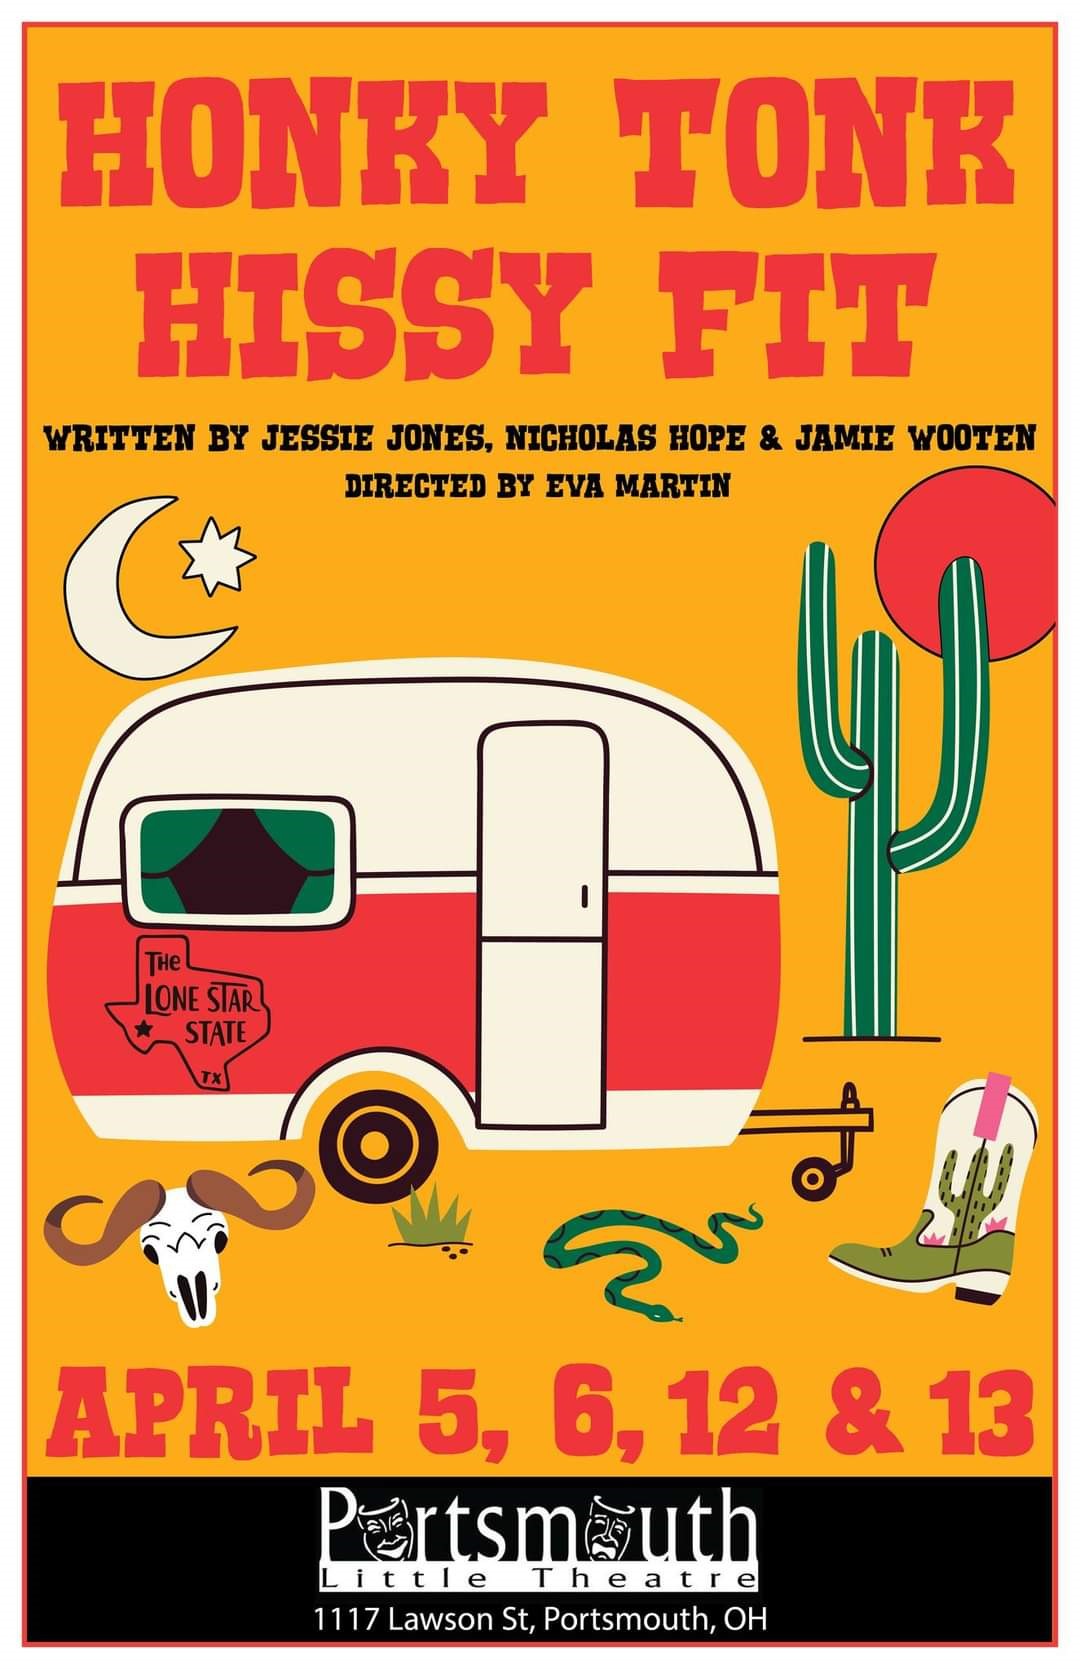 Honky Tonk Hissy Fit  on avr. 05, 19:30@Portsmouth Little Theatre - Choisissez un siège,Achetez des billets et obtenez des informations surPortsmouth Little Theatre 